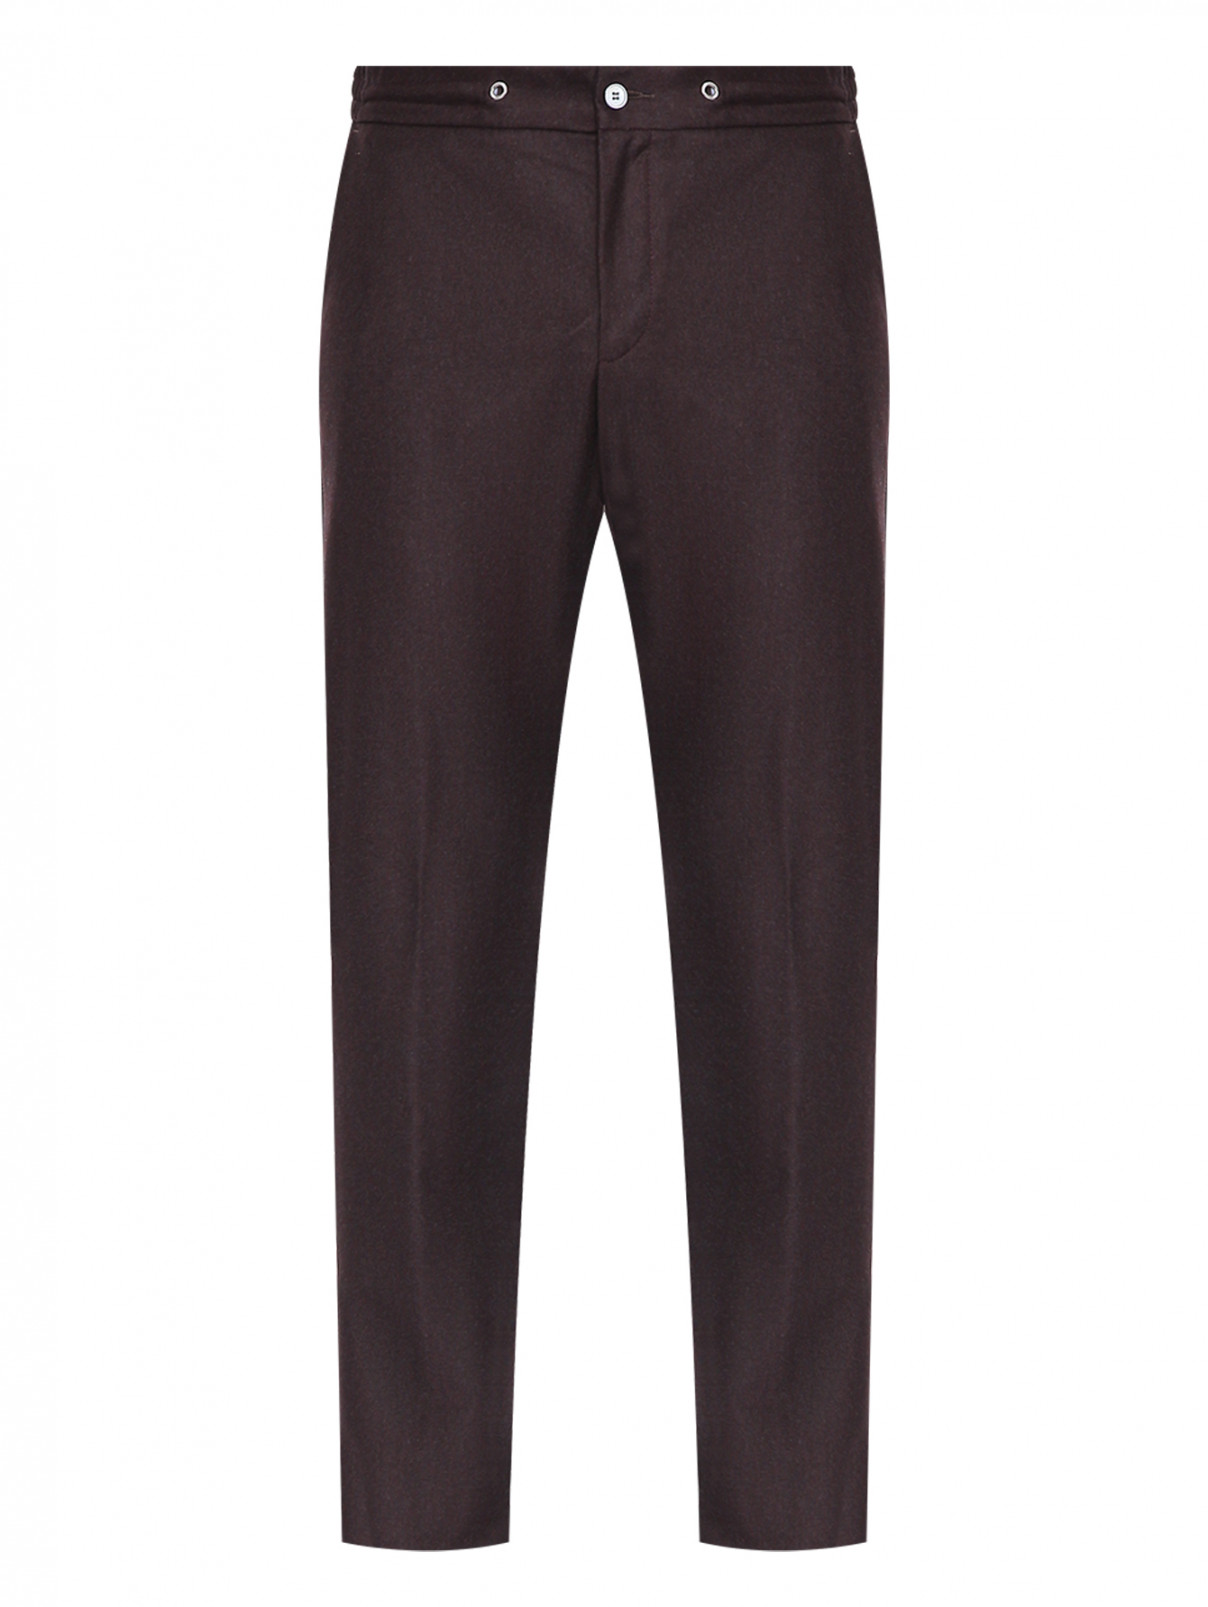 Зауженные брюки из шерсти Tombolini  –  Общий вид  – Цвет:  Коричневый